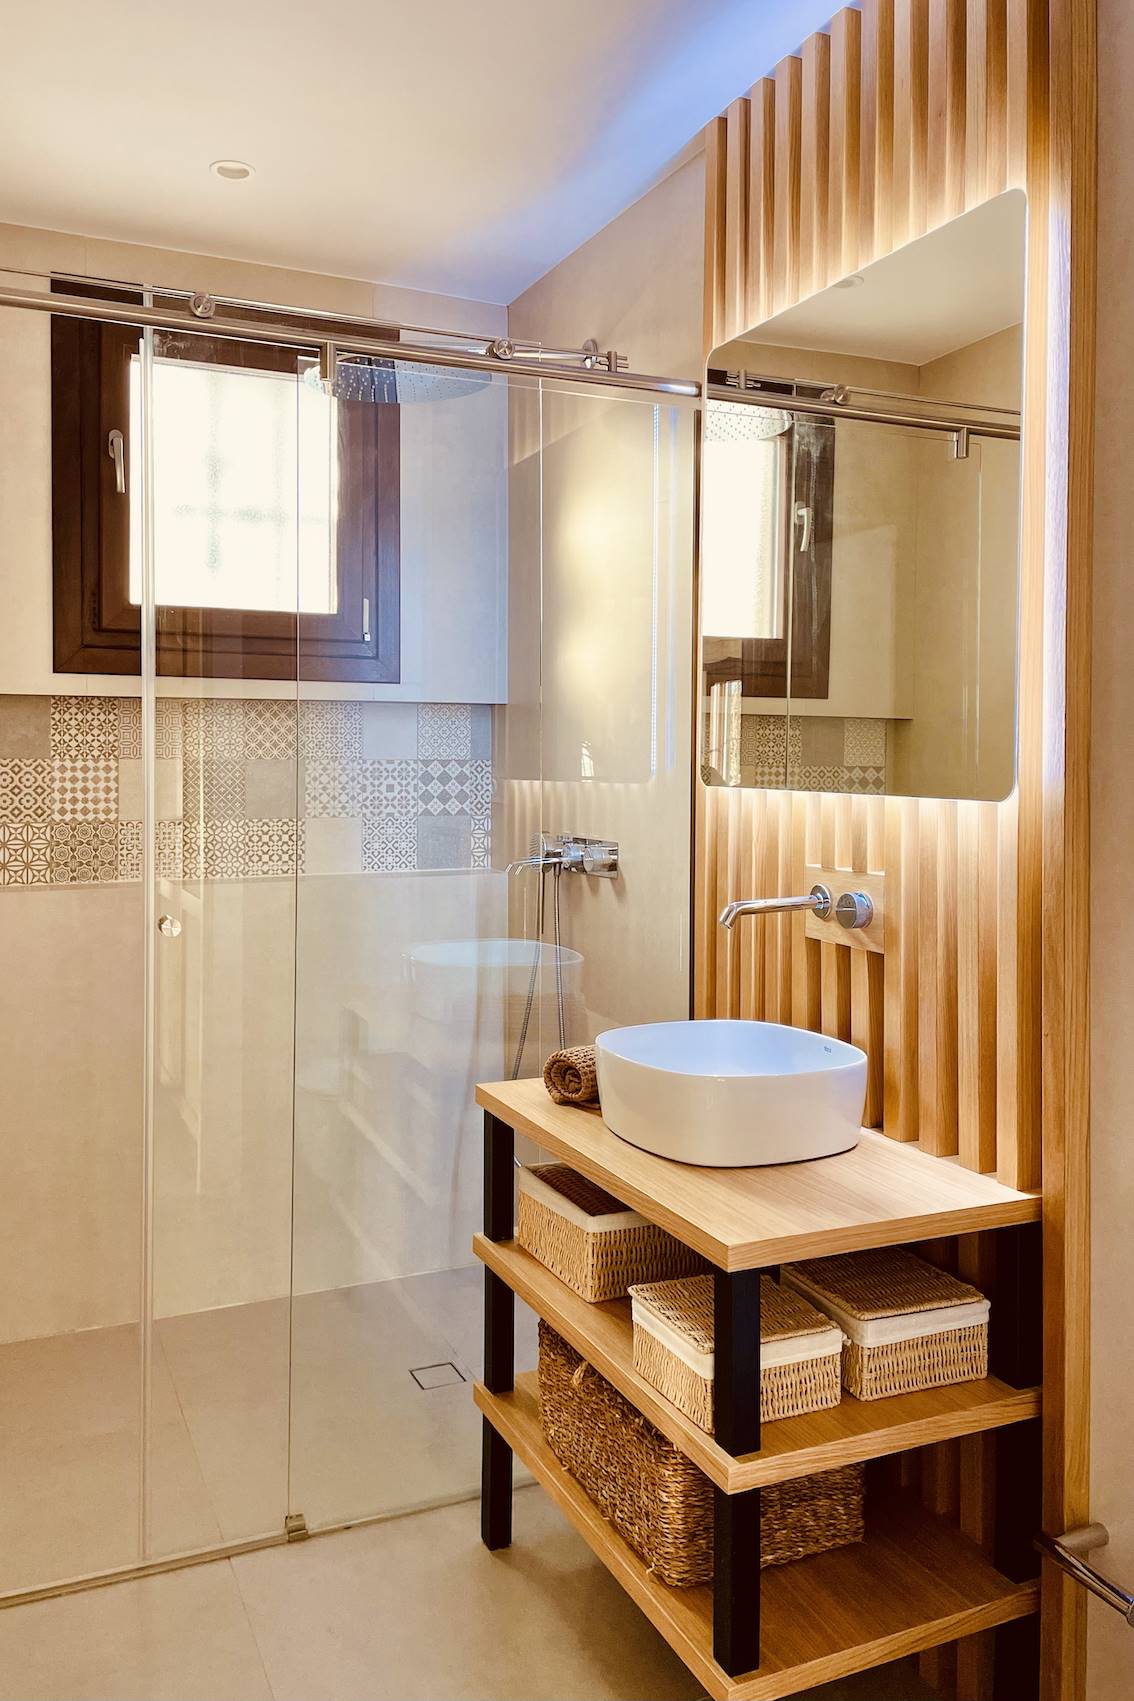 Baño con madera y hierro en el mueble del lavamanos y una amplia ducha con mampara de cristal.